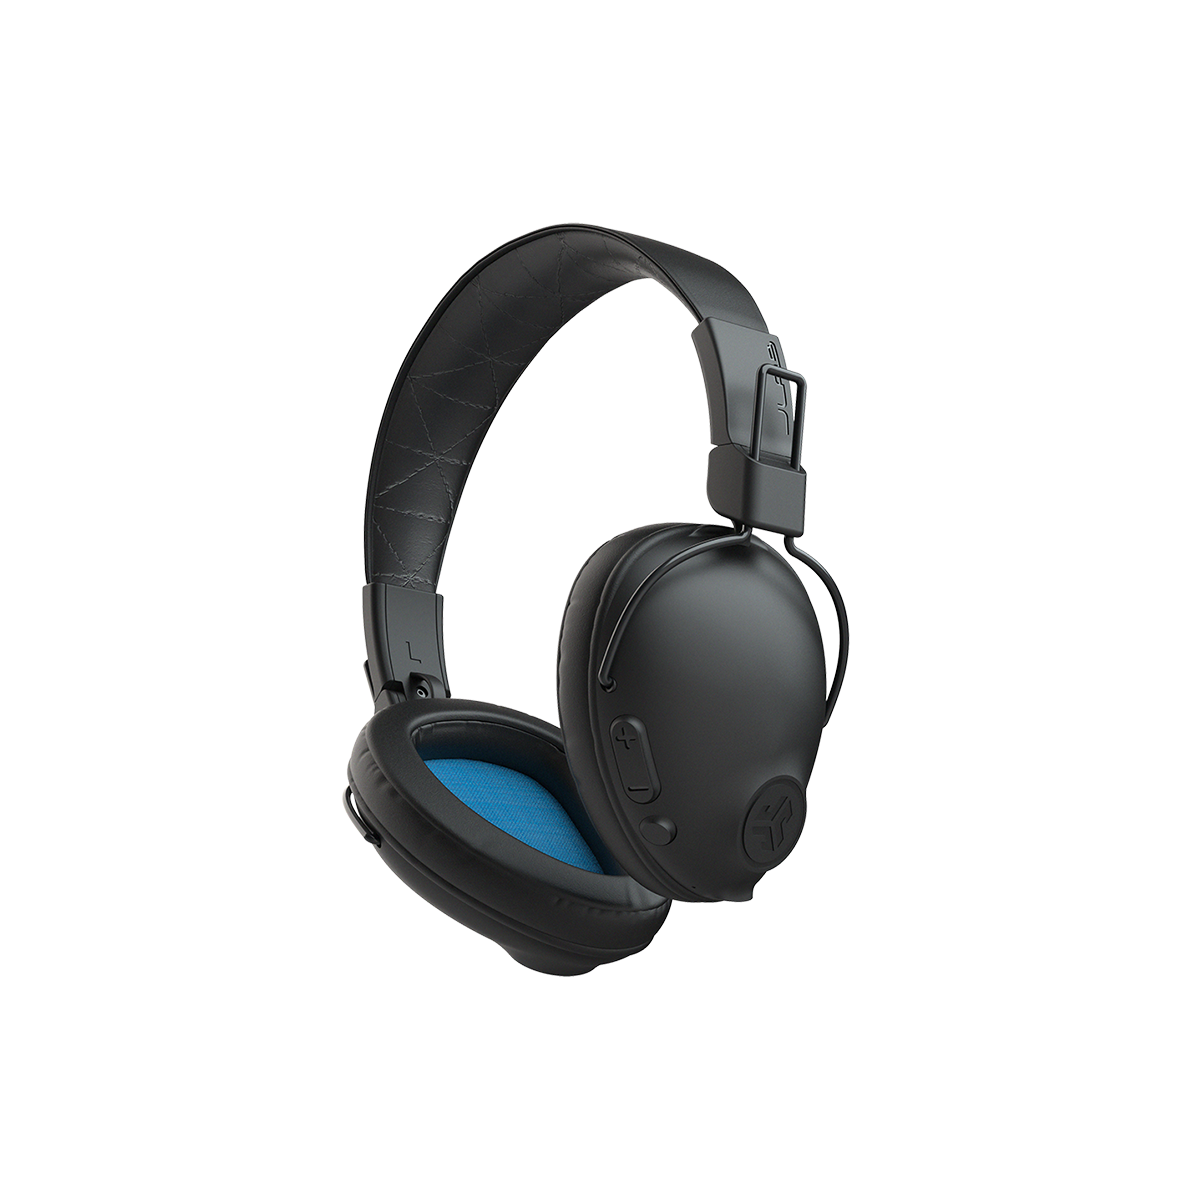 Tai nghe Bluetooth chụp tai TWS Jlab Studio Pro màu đen foam Over-ear thời gian nghe 50H bluetooth 5.0 âm thanh EQ3 - Hàng chính hãng